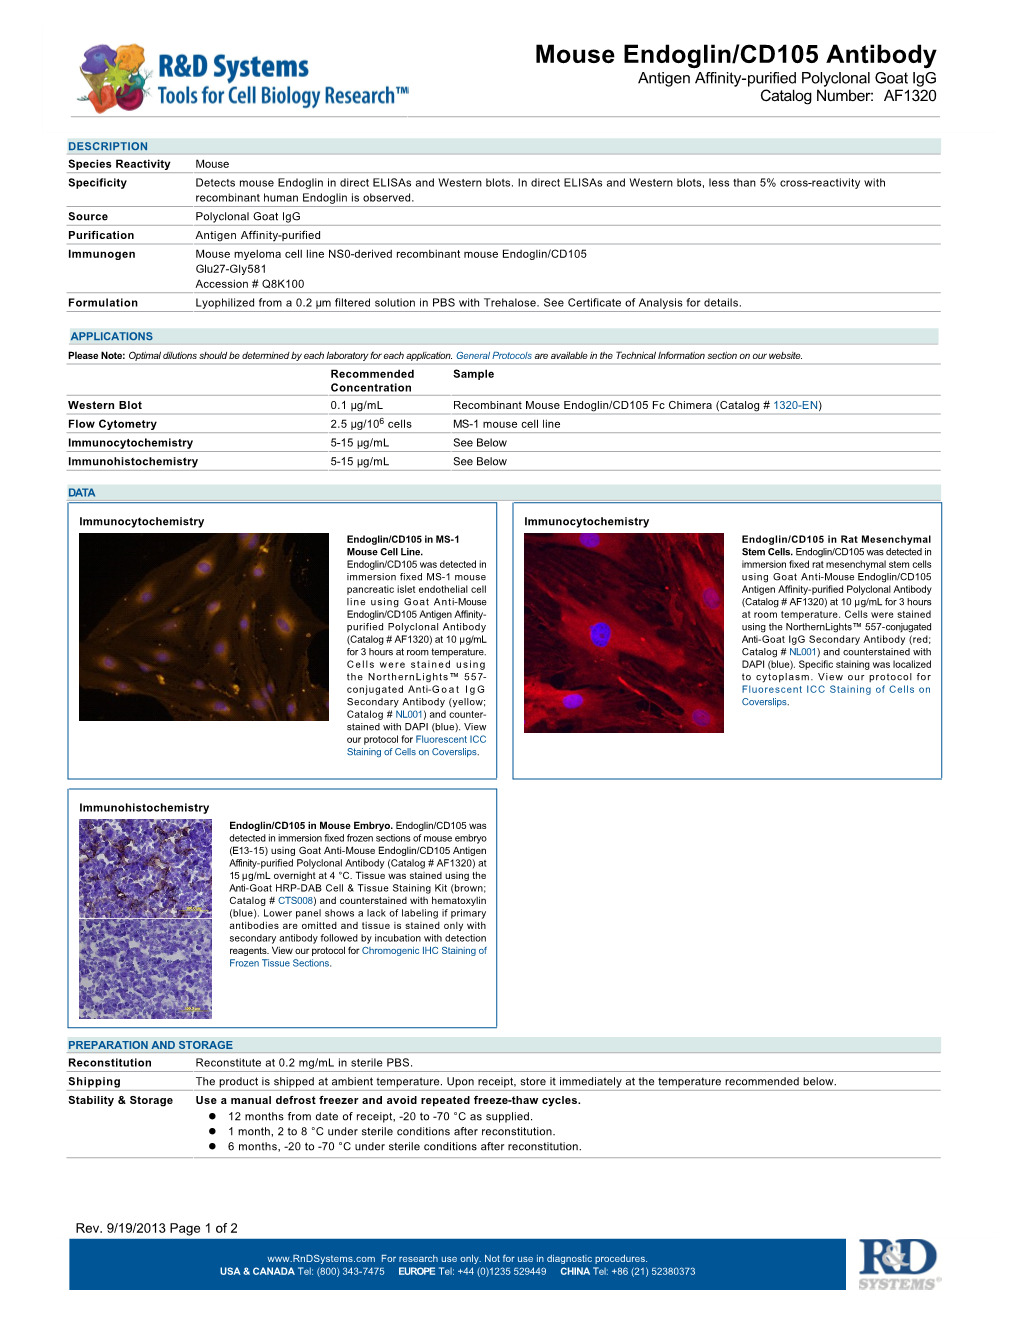 Mouse Endoglin/CD105 Antibody Antigen Affinity-Purified Polyclonal Goat Igg Catalog Number: AF1320